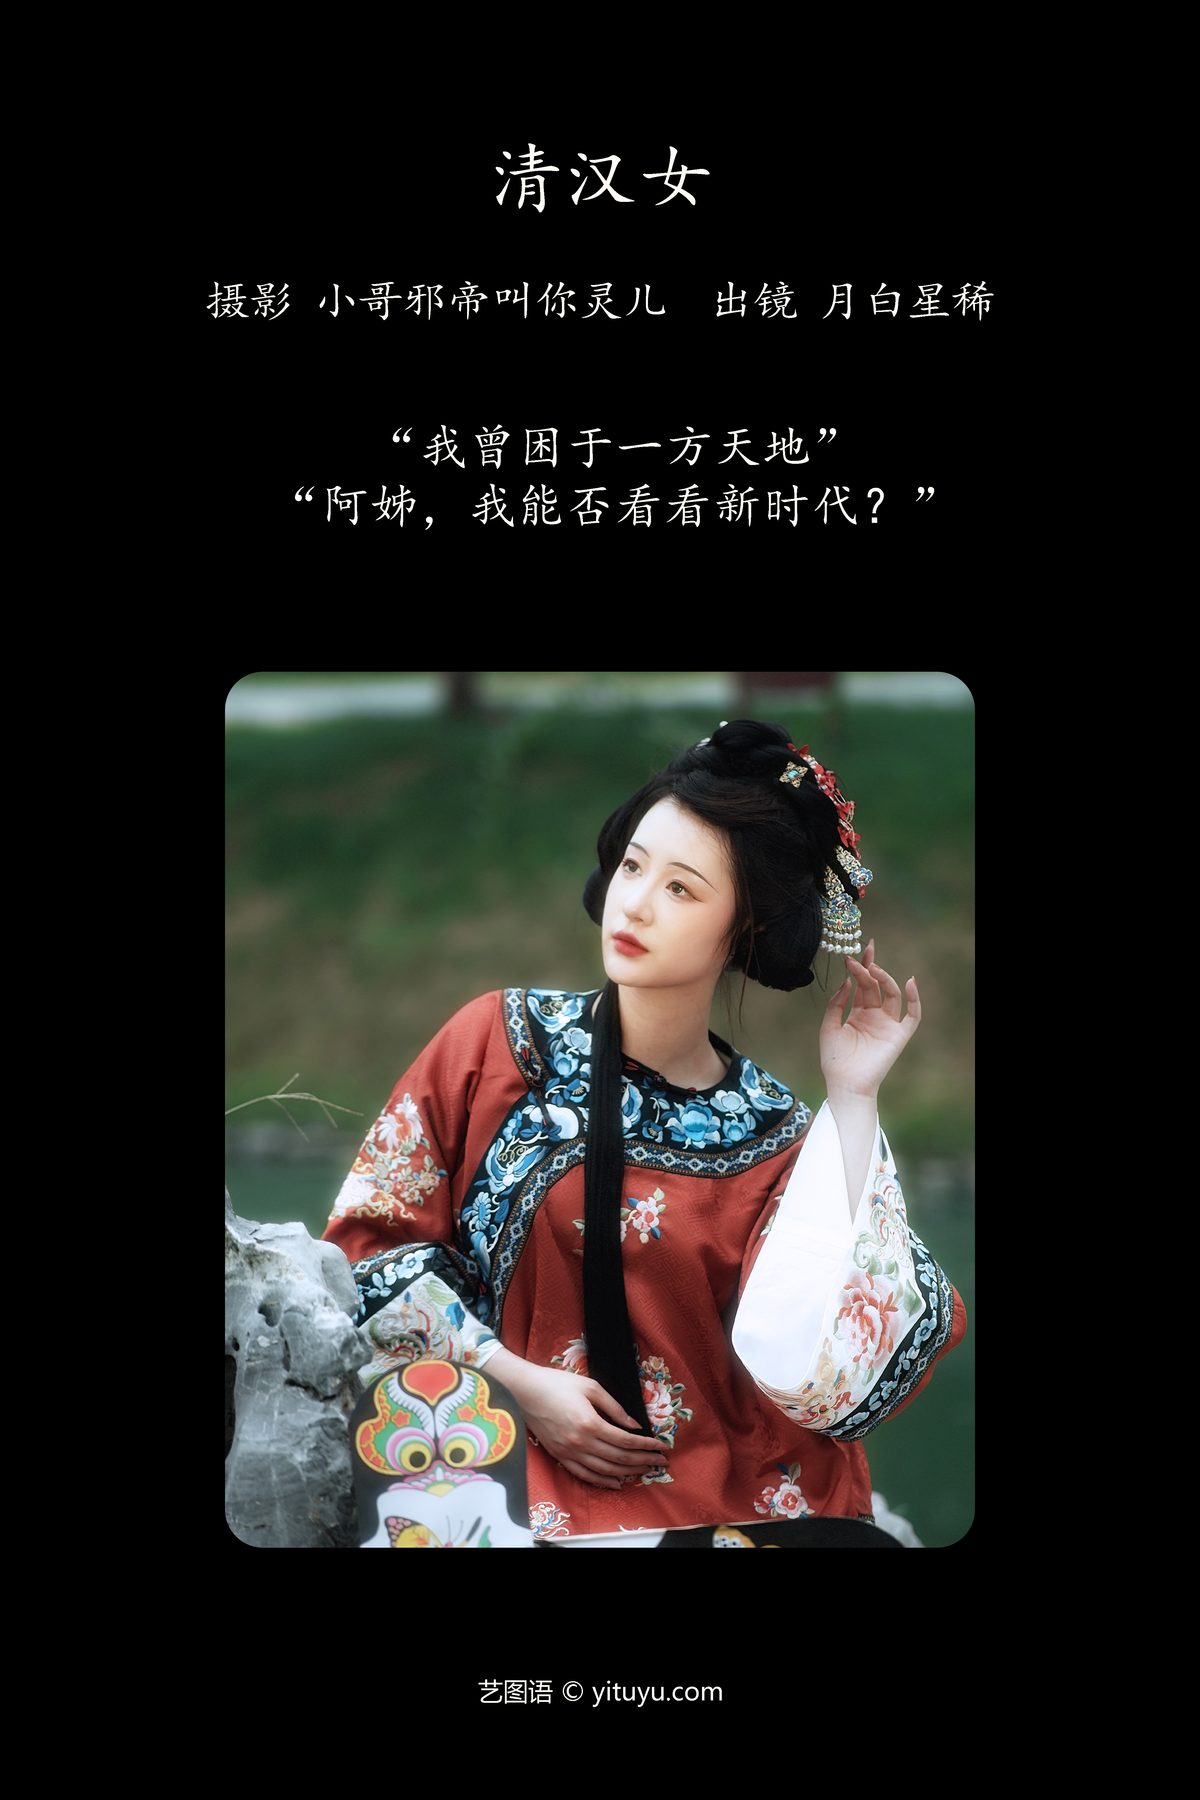 YiTuYu艺图语 Vol 5243 Yue Bai Xing Xi 0001 1949242408.jpg